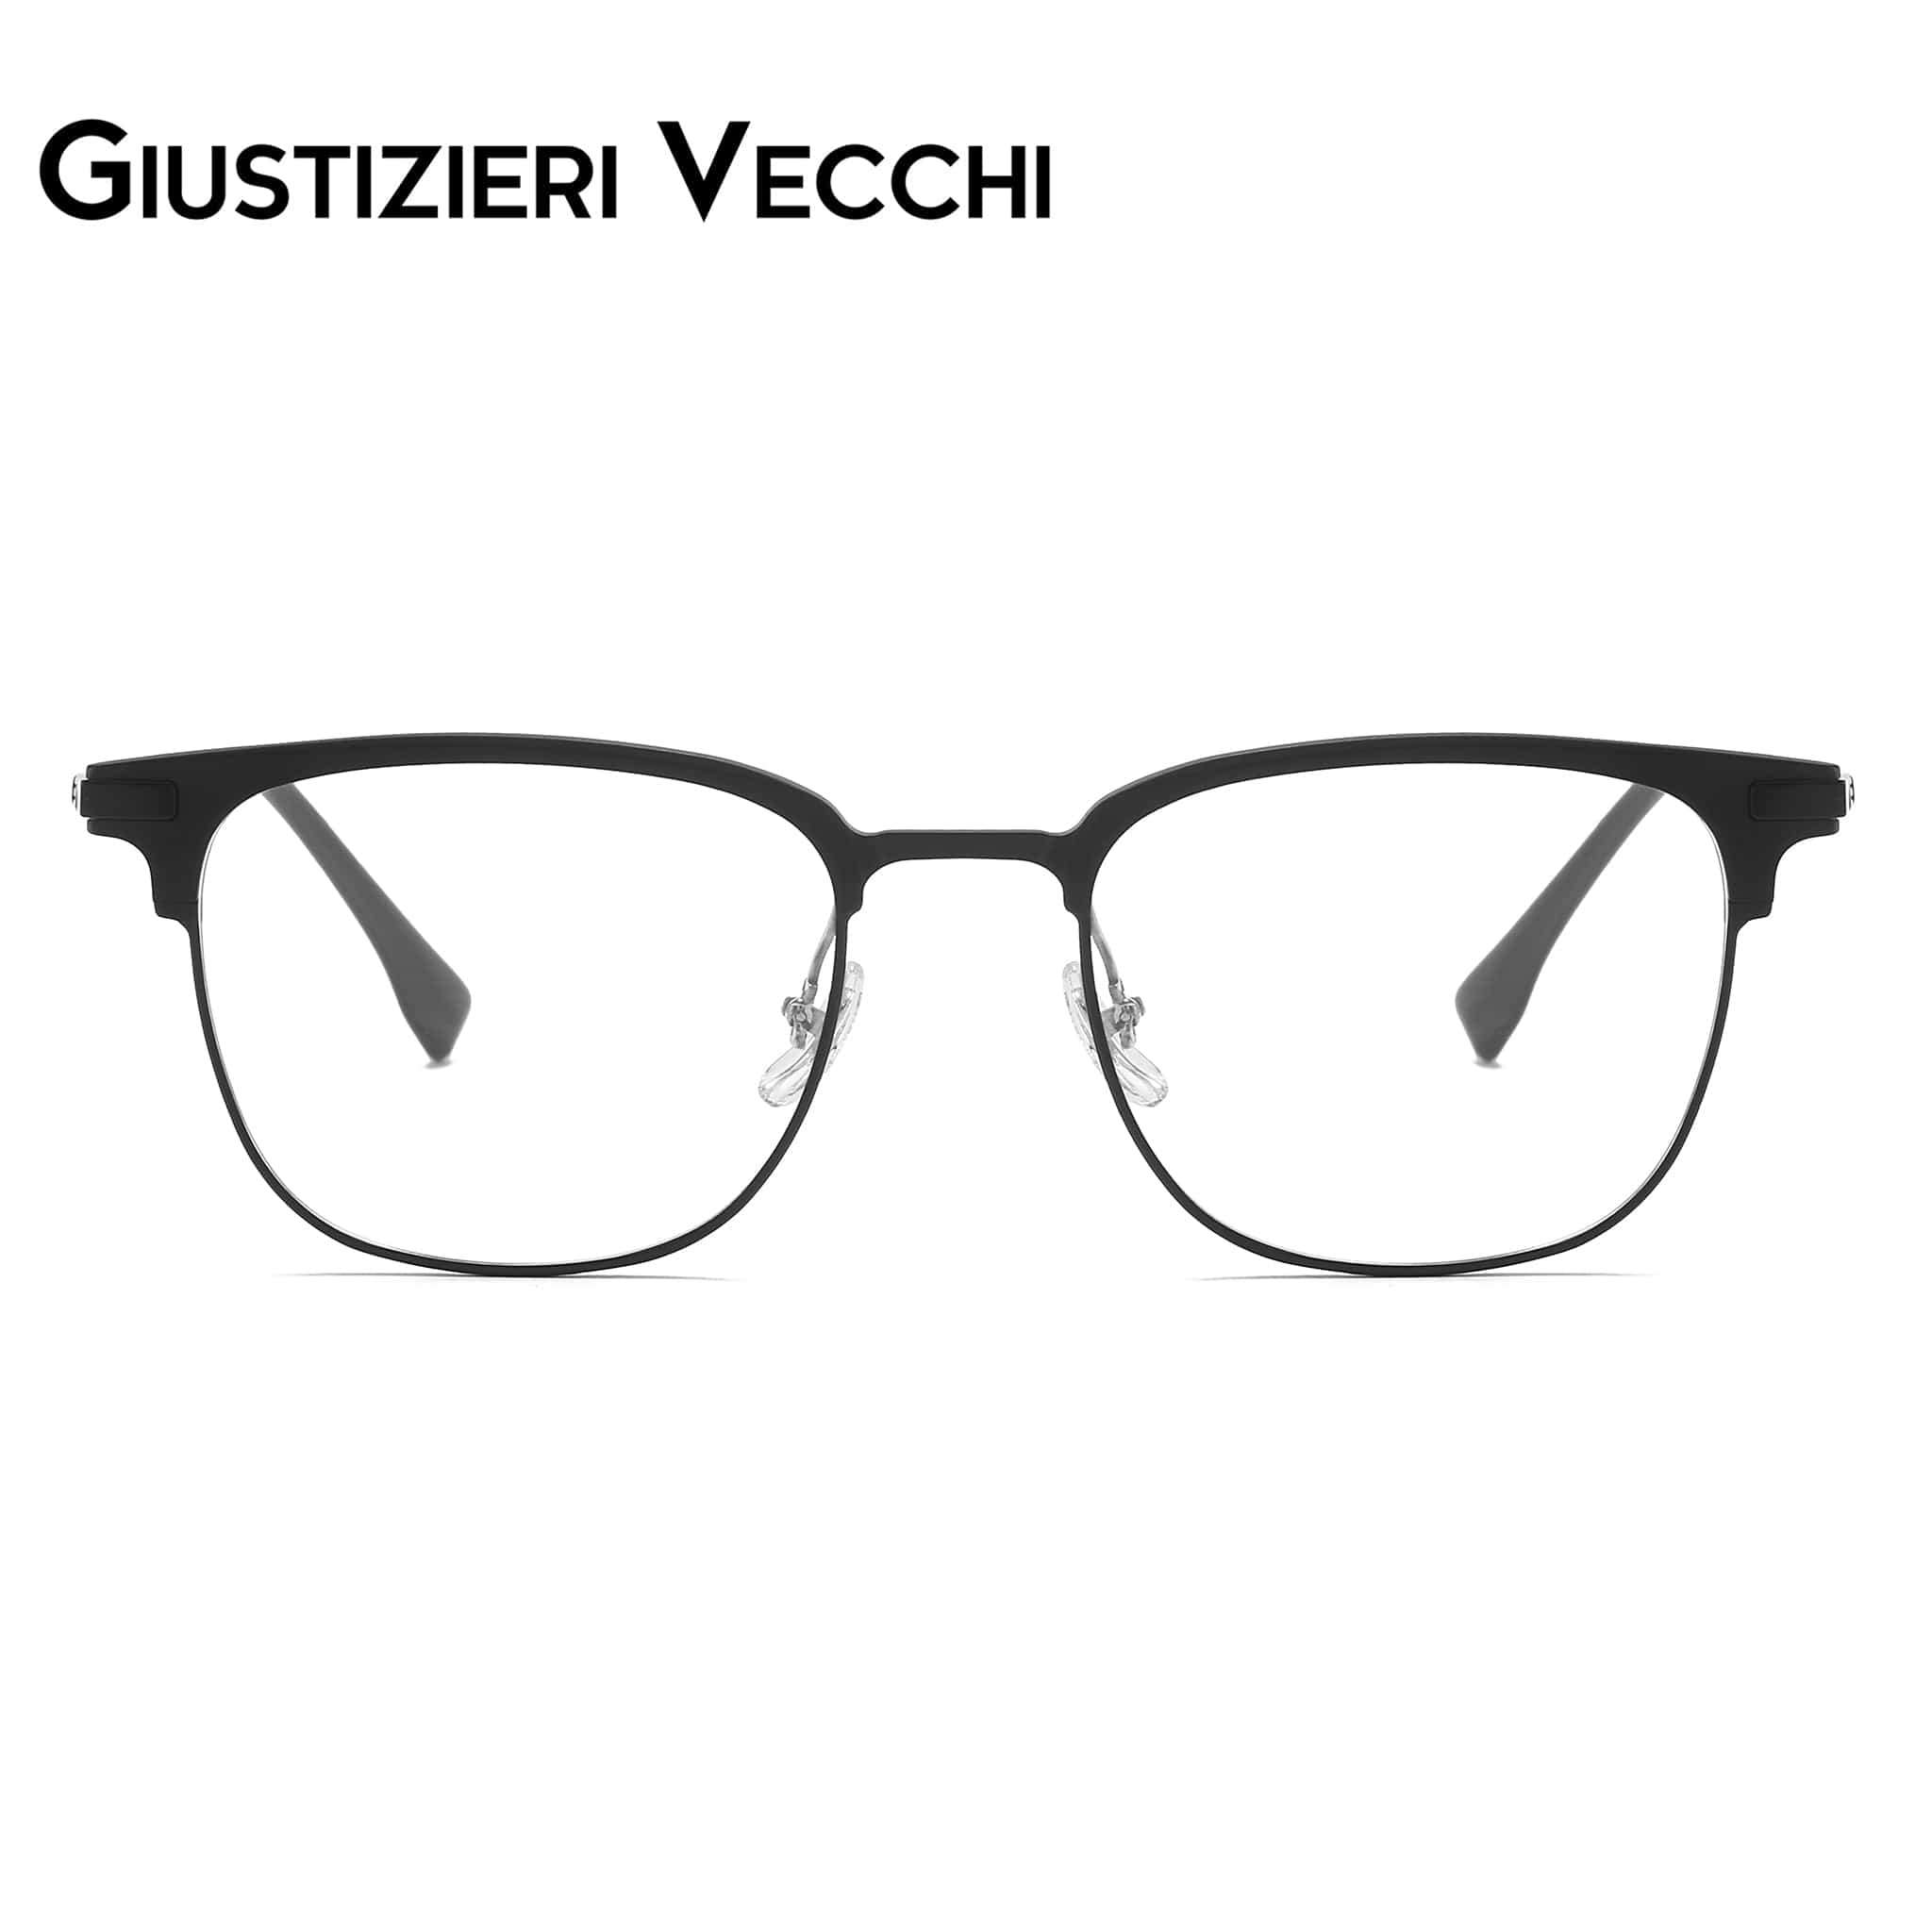 GIUSTIZIERI VECCHI Eyeglasses Small / Black FireRush Uno